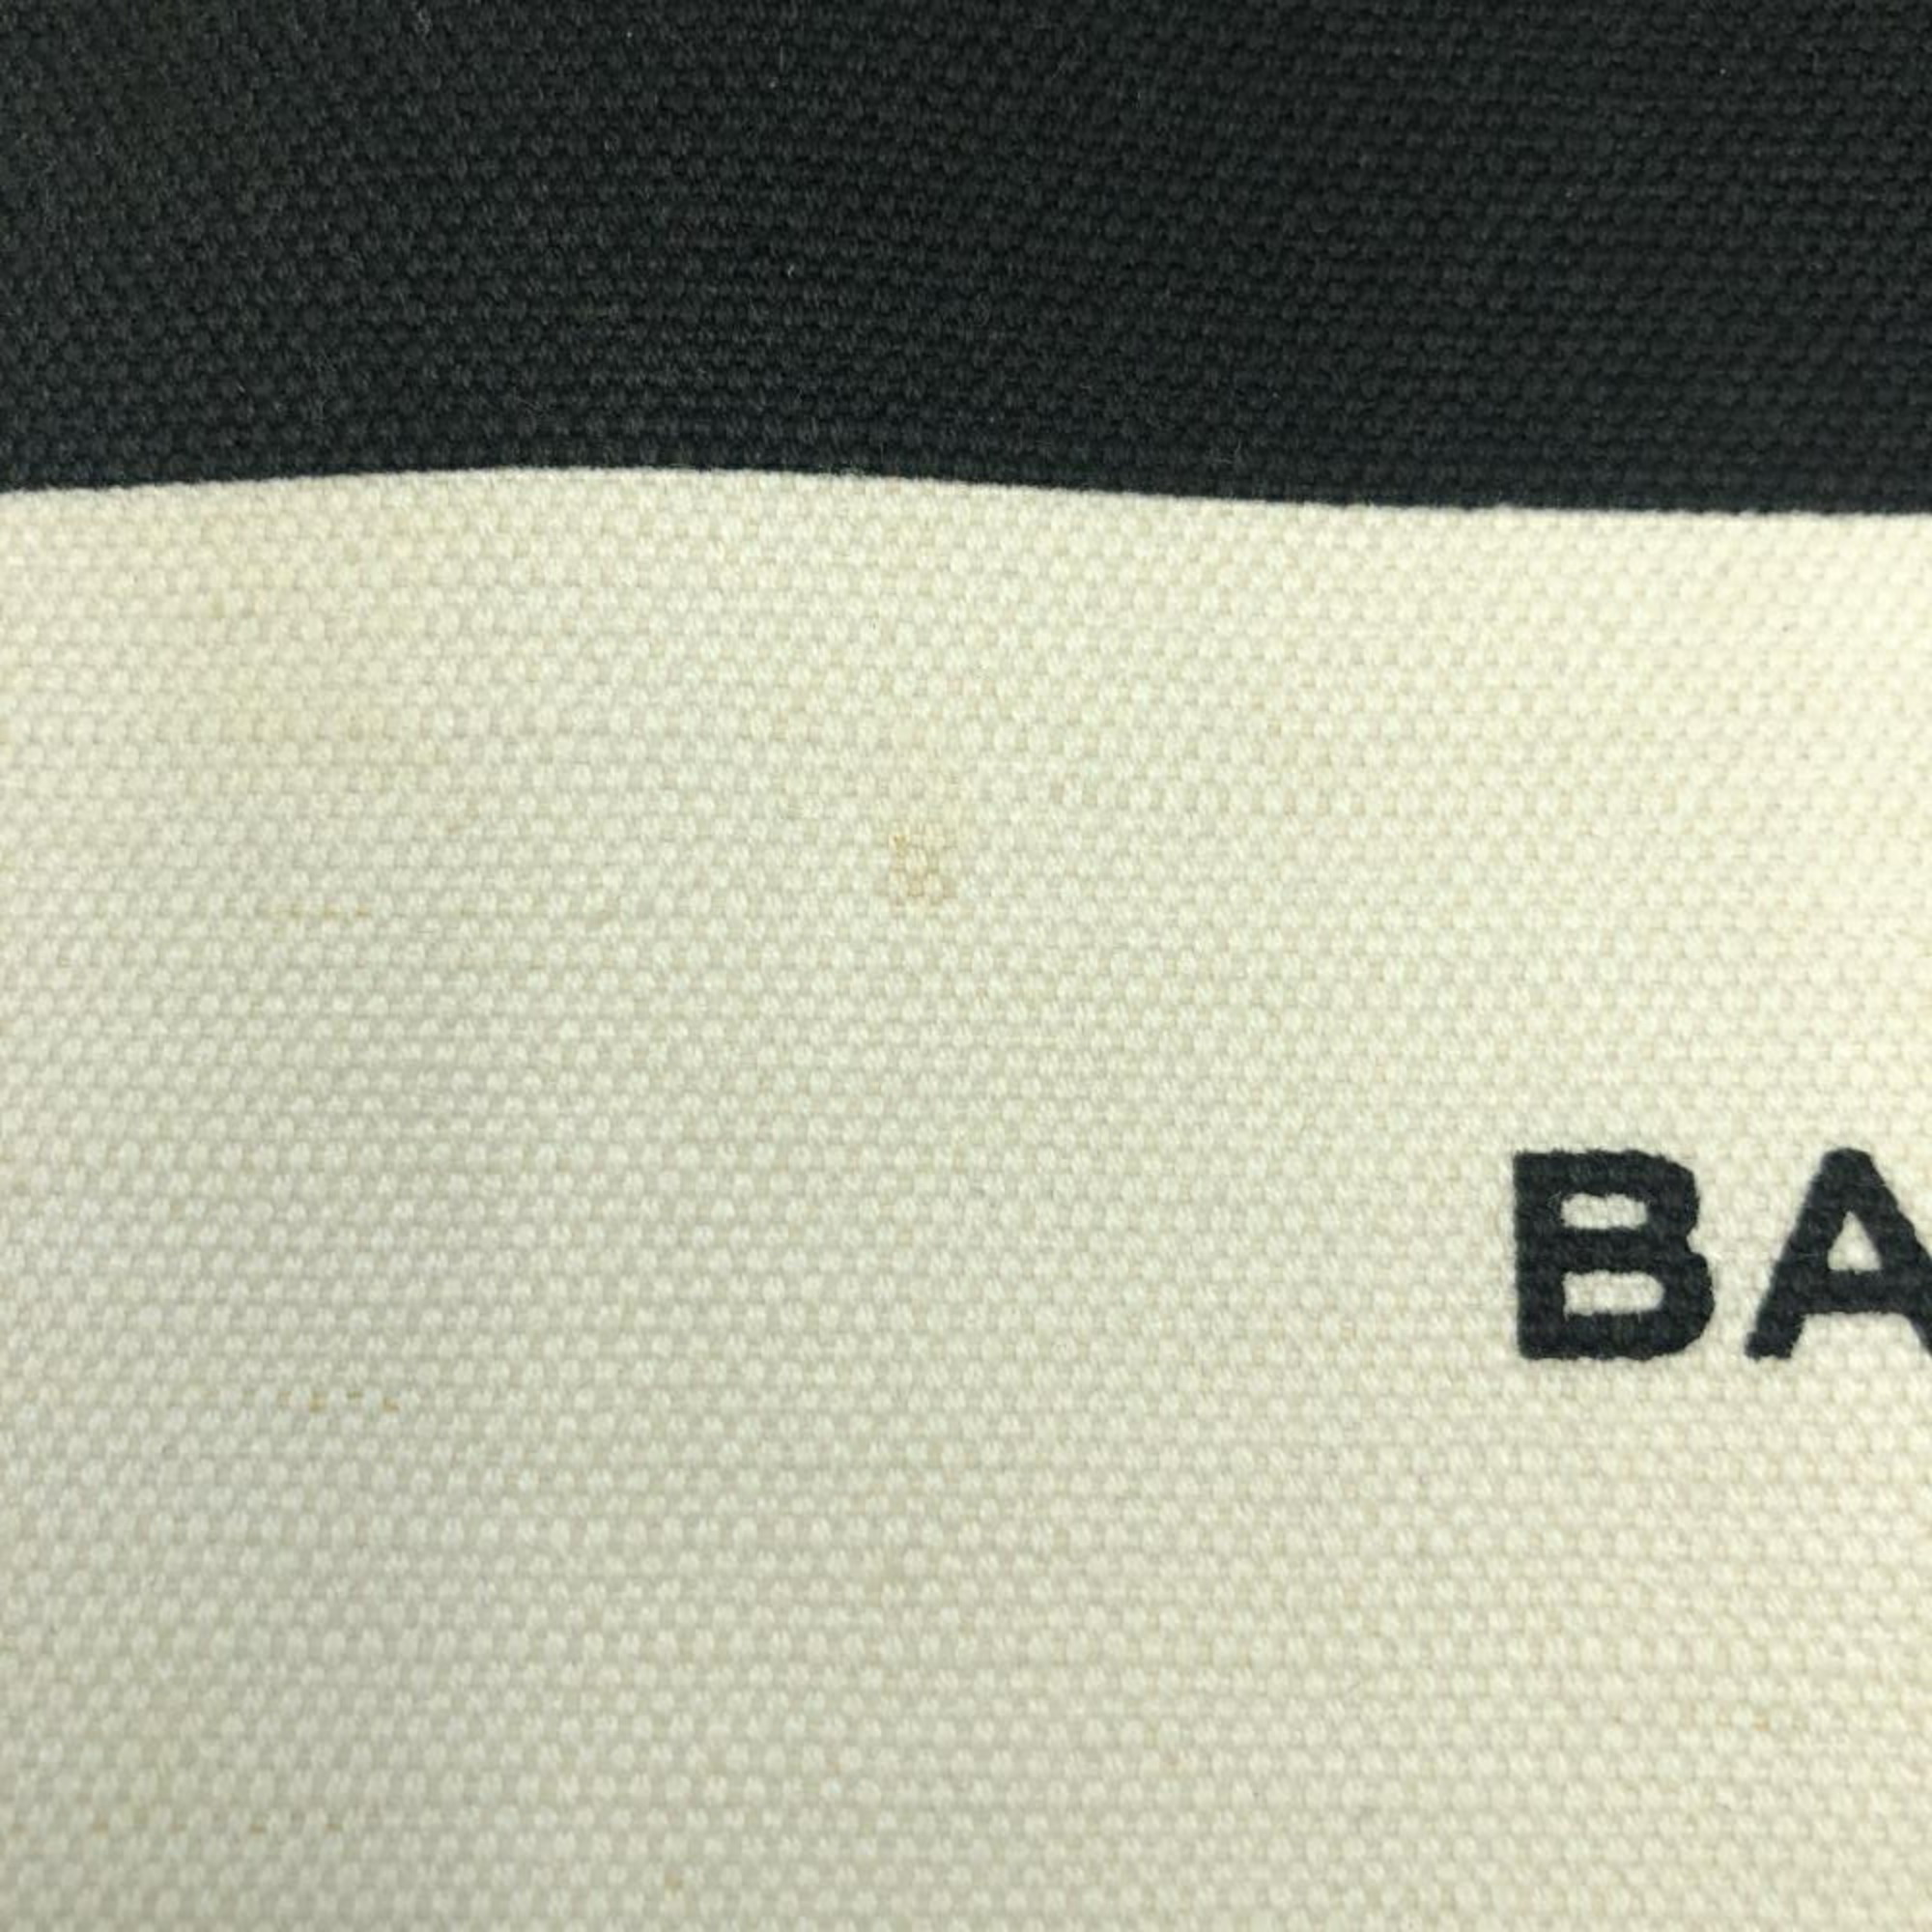 BALENCIAGA Canvas Clutch Bag Black White Balenciaga